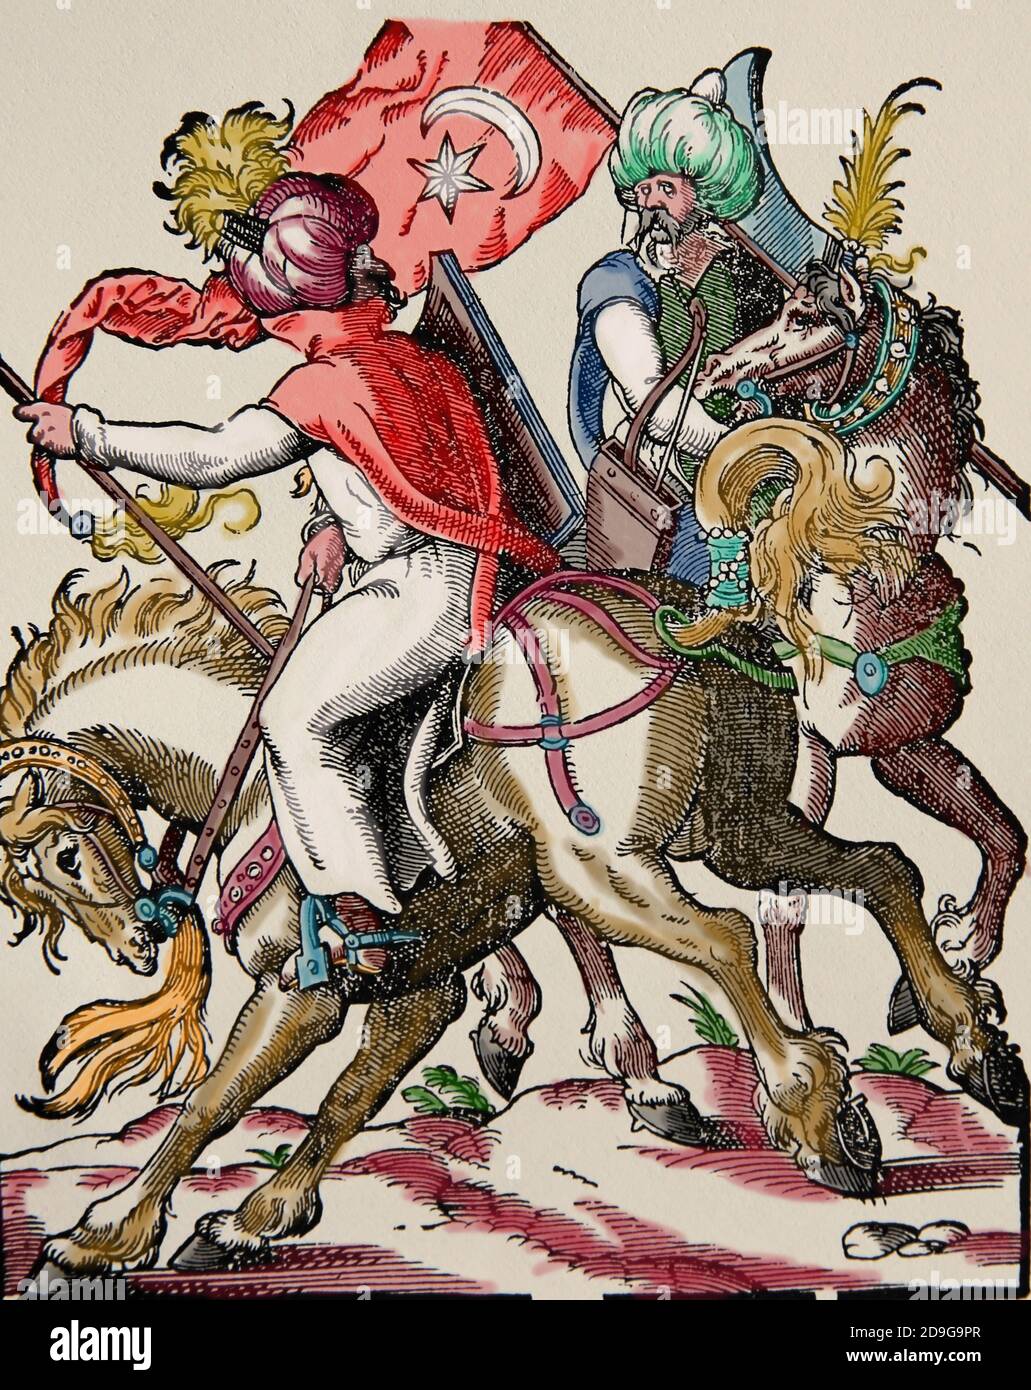 L'ère moderne. Empire ottoman. xvie siècle. Deux cavalryman turcs. Gravure de Jost Amman, XVIe siècle. Coloration ultérieure. Banque D'Images